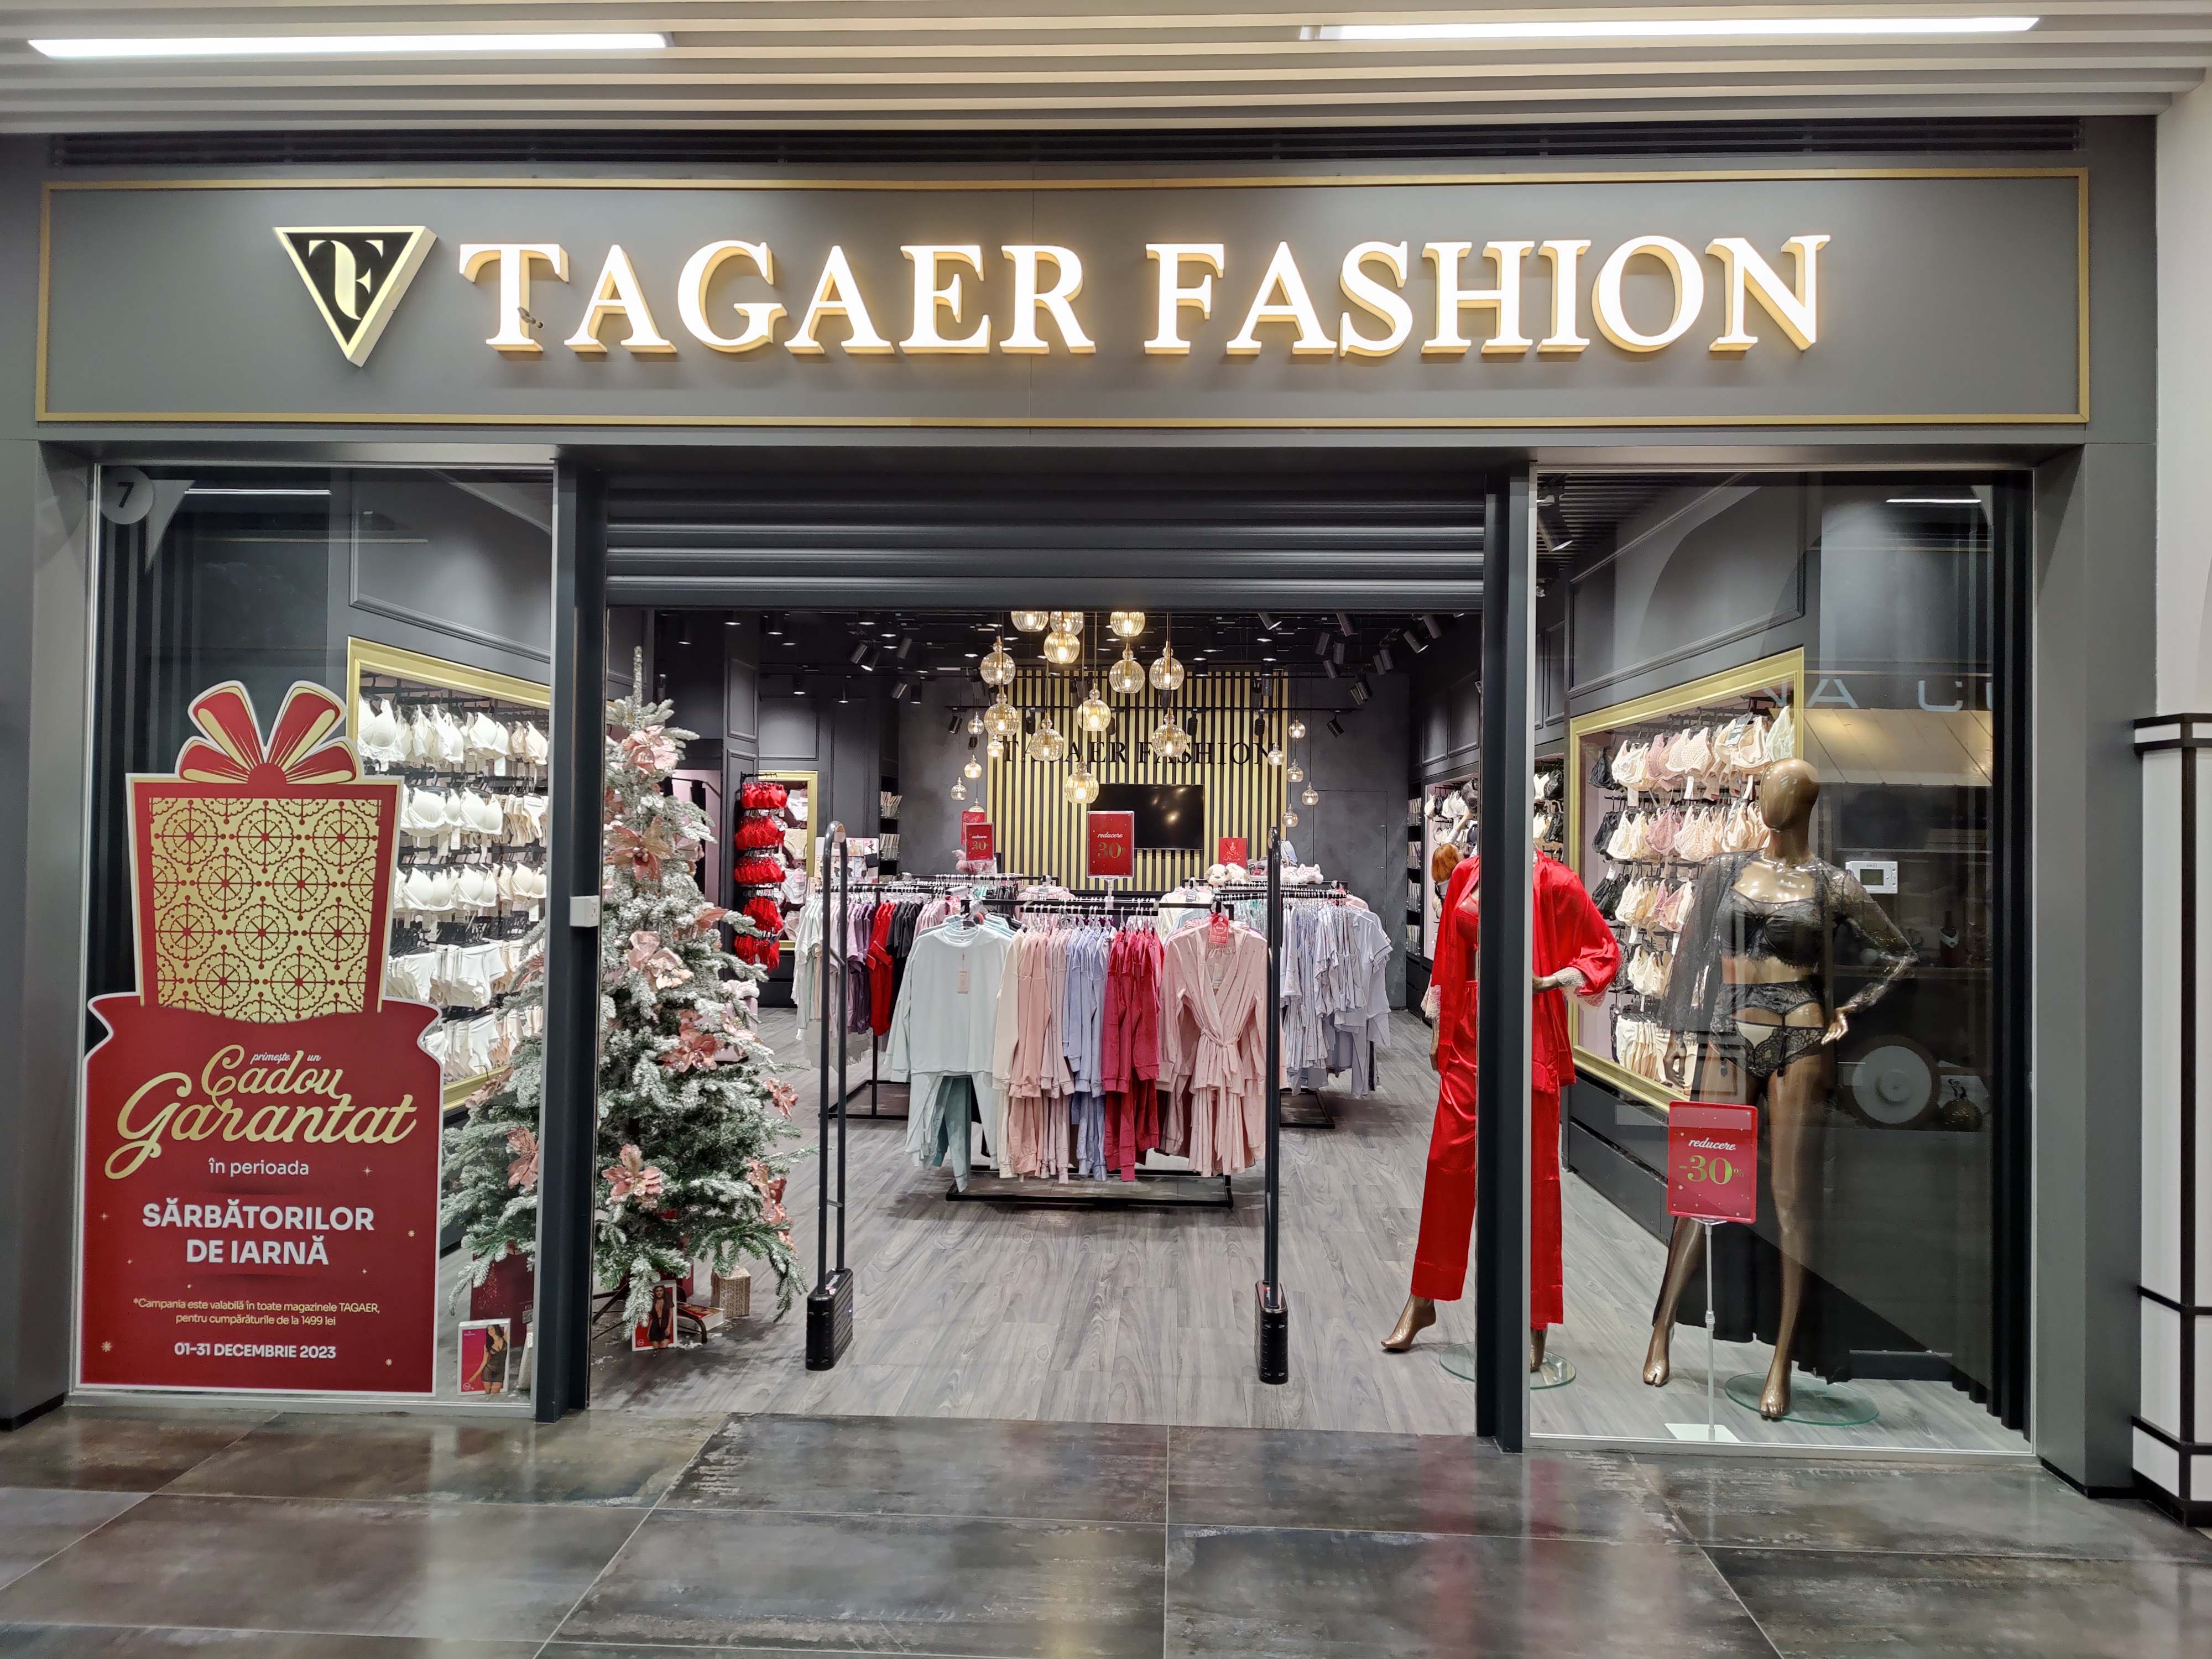 Tagaer Fashion